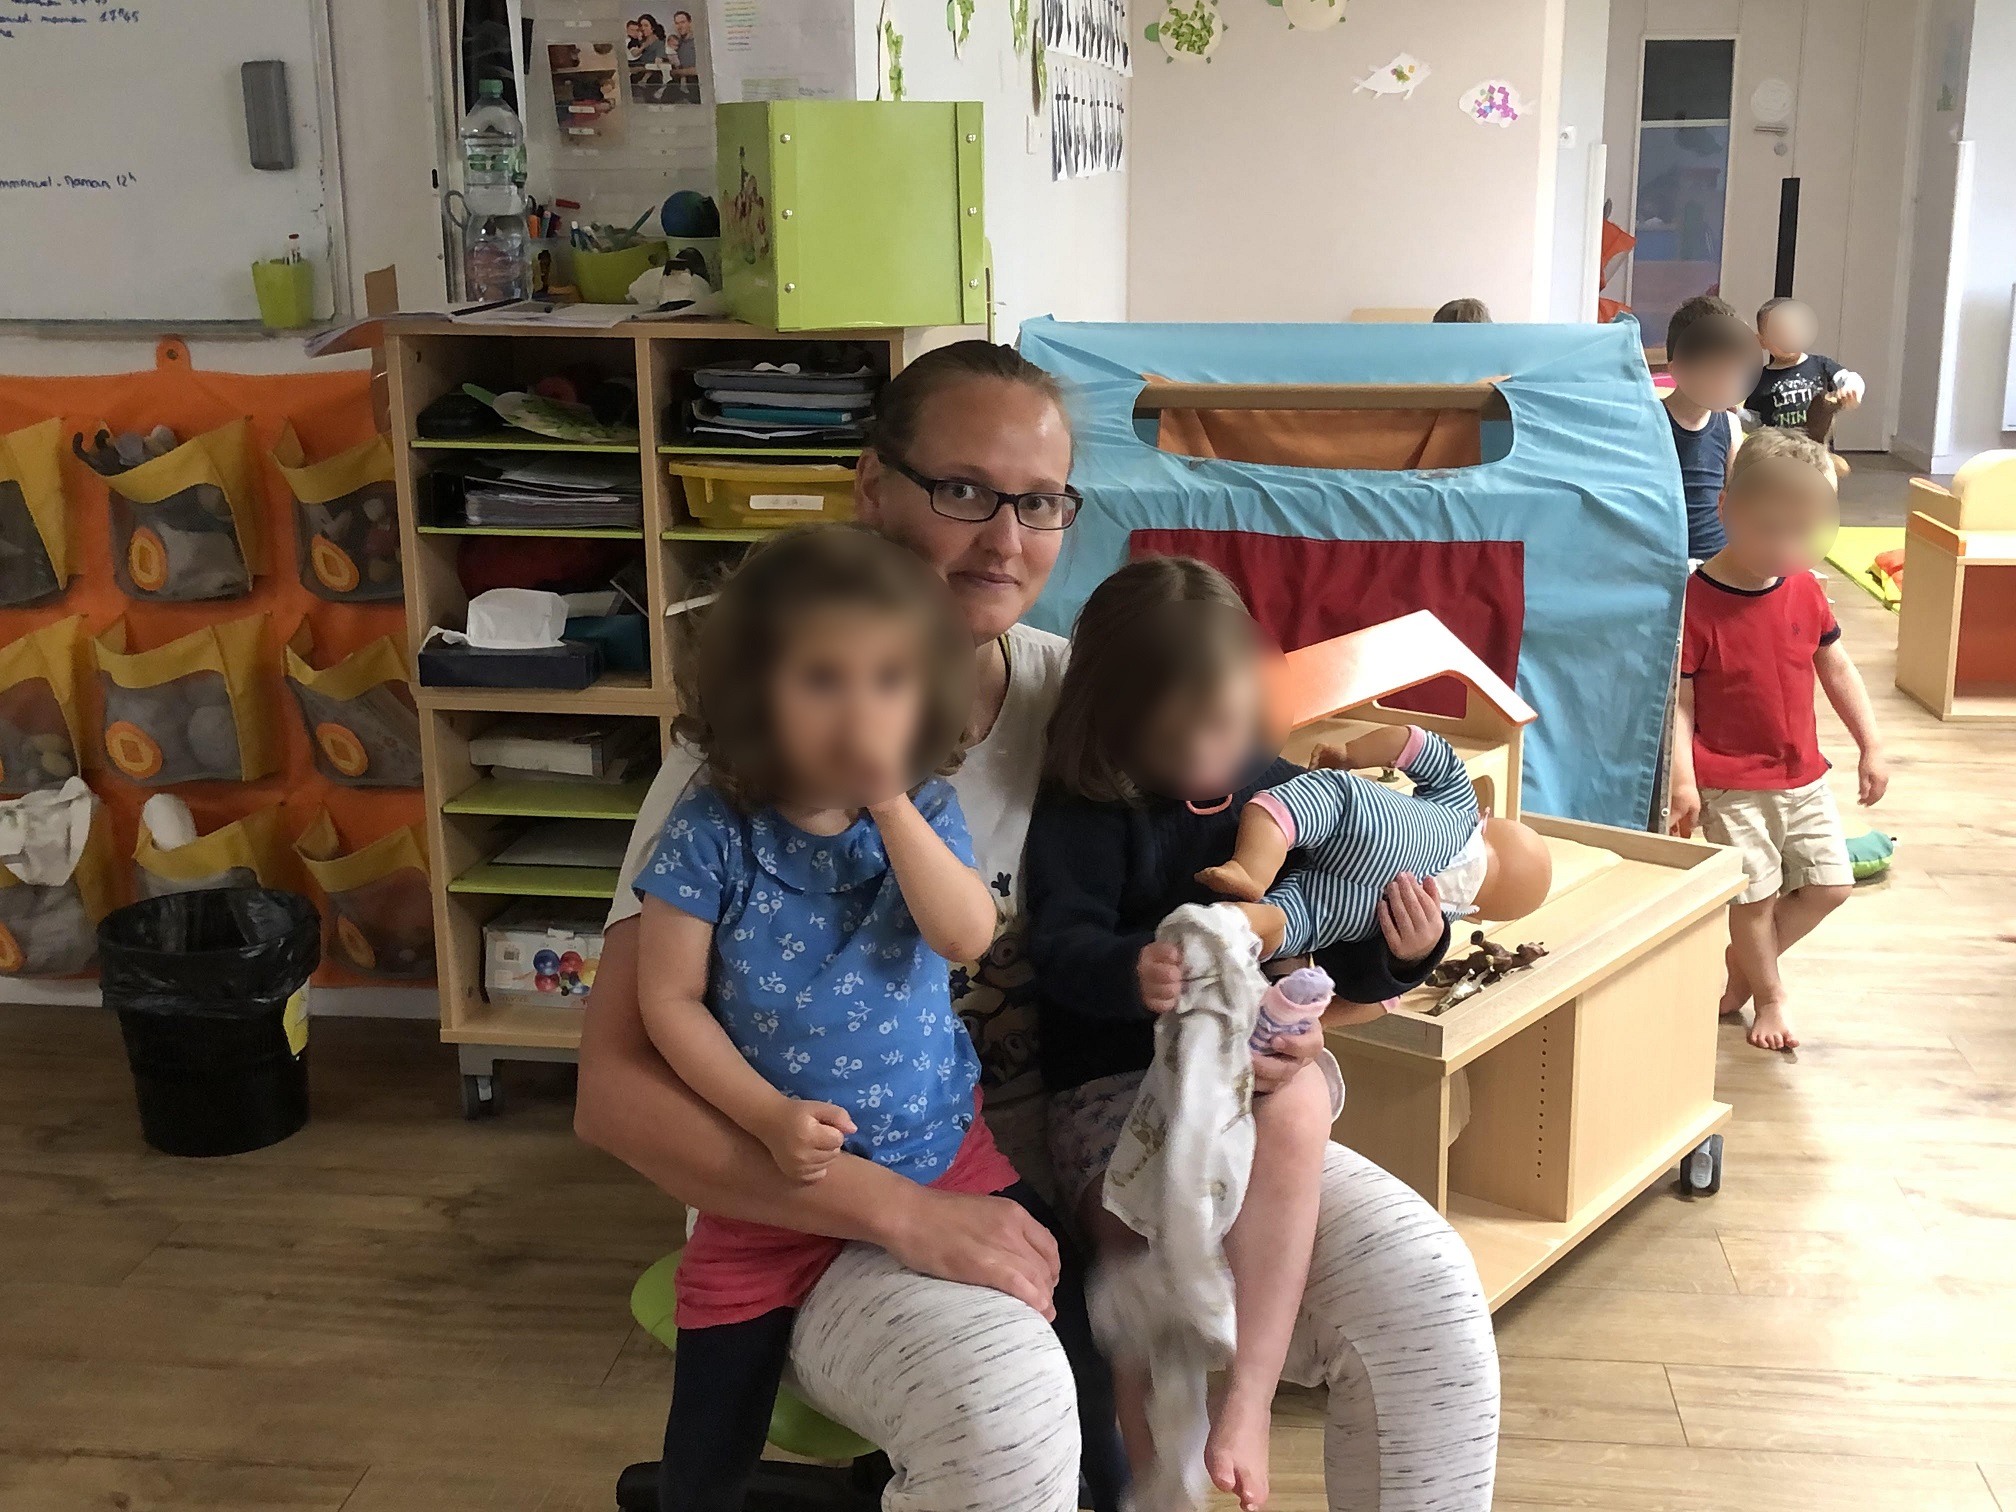 Alexia et deux enfants au multi-accueil St Louis Borgnis - Versailles